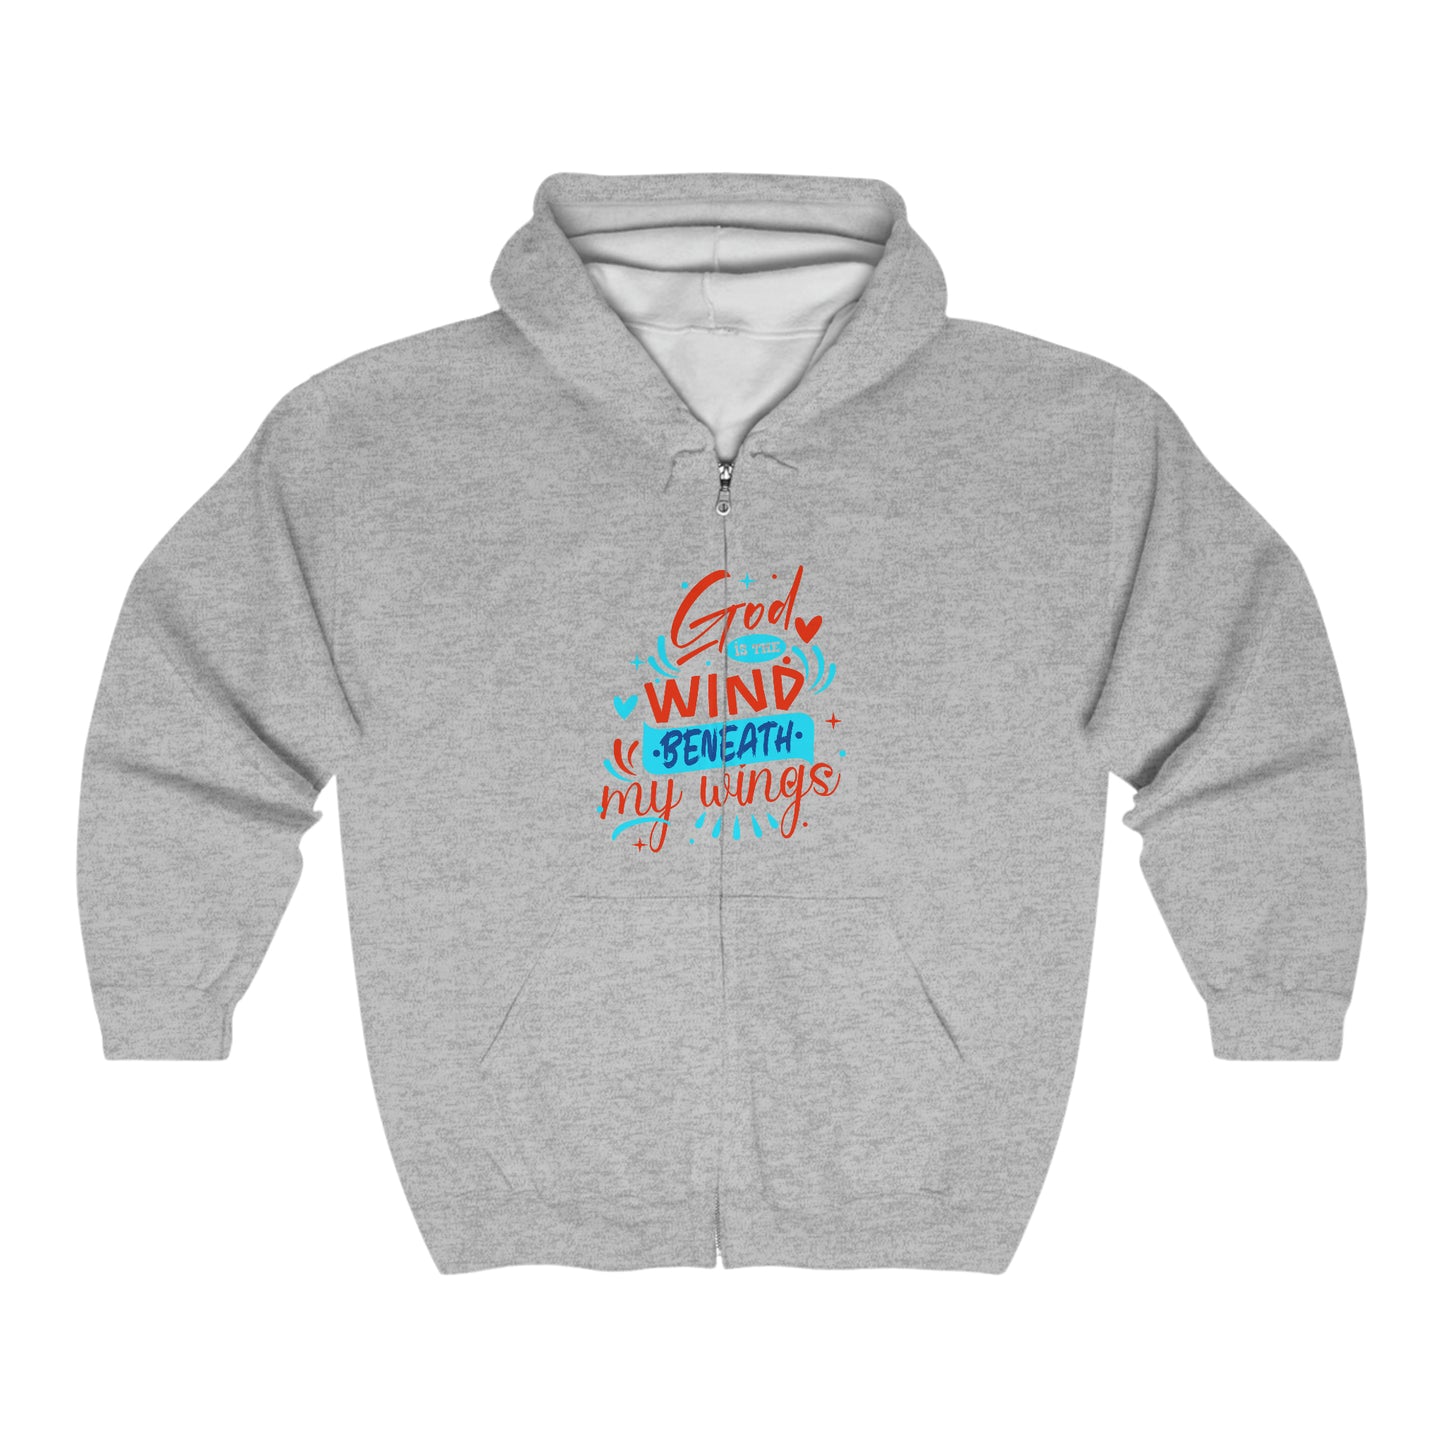 God Is The Wind Beneath My Wings Unisex Heavy Blend Full Zip Hooded Sweatshirt